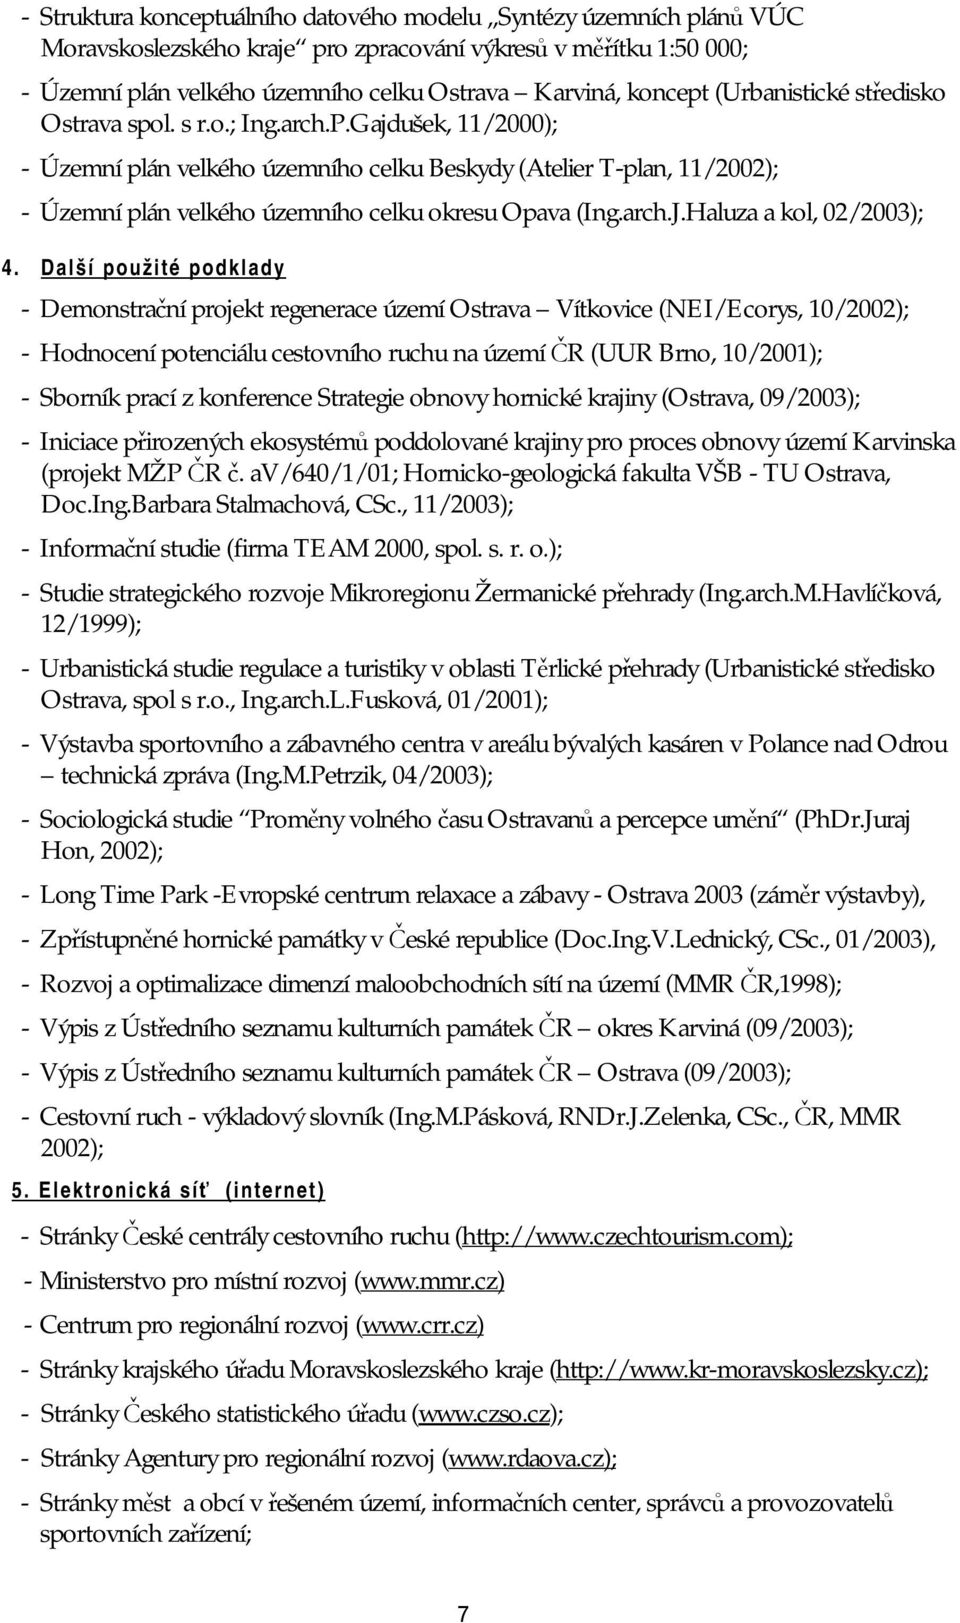 Gajdušek, 11/2000); - Územní plán velkého územního celku Beskydy (Atelier T-plan, 11/2002); - Územní plán velkého územního celku okresu Opava (Ing.arch.J.Haluza a kol, 02/2003); 4.